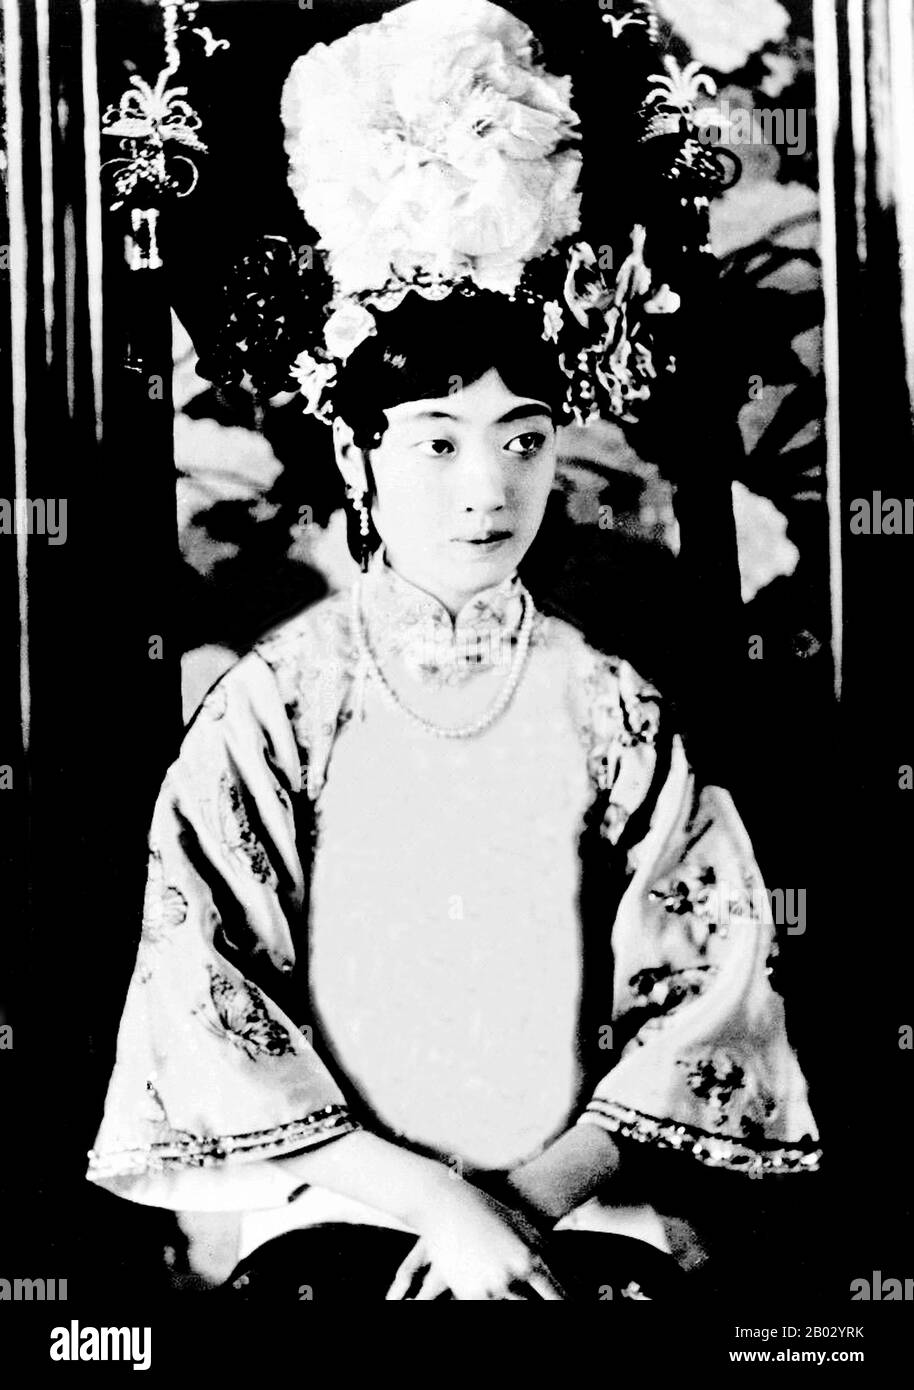 Il Gogulo Wan Rong ('Bello Volto') era la figlia di Rong Yuan, il ministro Degli Affari Interni del governo Qing e capo di una delle famiglie più importanti e ricche della Manciuria. All'età di 17 anni, Wan Rong è stato selezionato da una serie di fotografie presentate all'imperatore Xuan Tong (Puyi). Il matrimonio ebbe luogo quando Puyi raggiunse i 16 anni. WAN Rong è stato l'ultimo Imperatrice Consort della Dinastia Qing in Cina, e poi l'Imperatrice di Manchukuo (conosciuto anche come Impero Manchuriano). Empress Wan Rong morì di malnutrizione e dipendenza da oppio in prigione a Jilin. Foto Stock